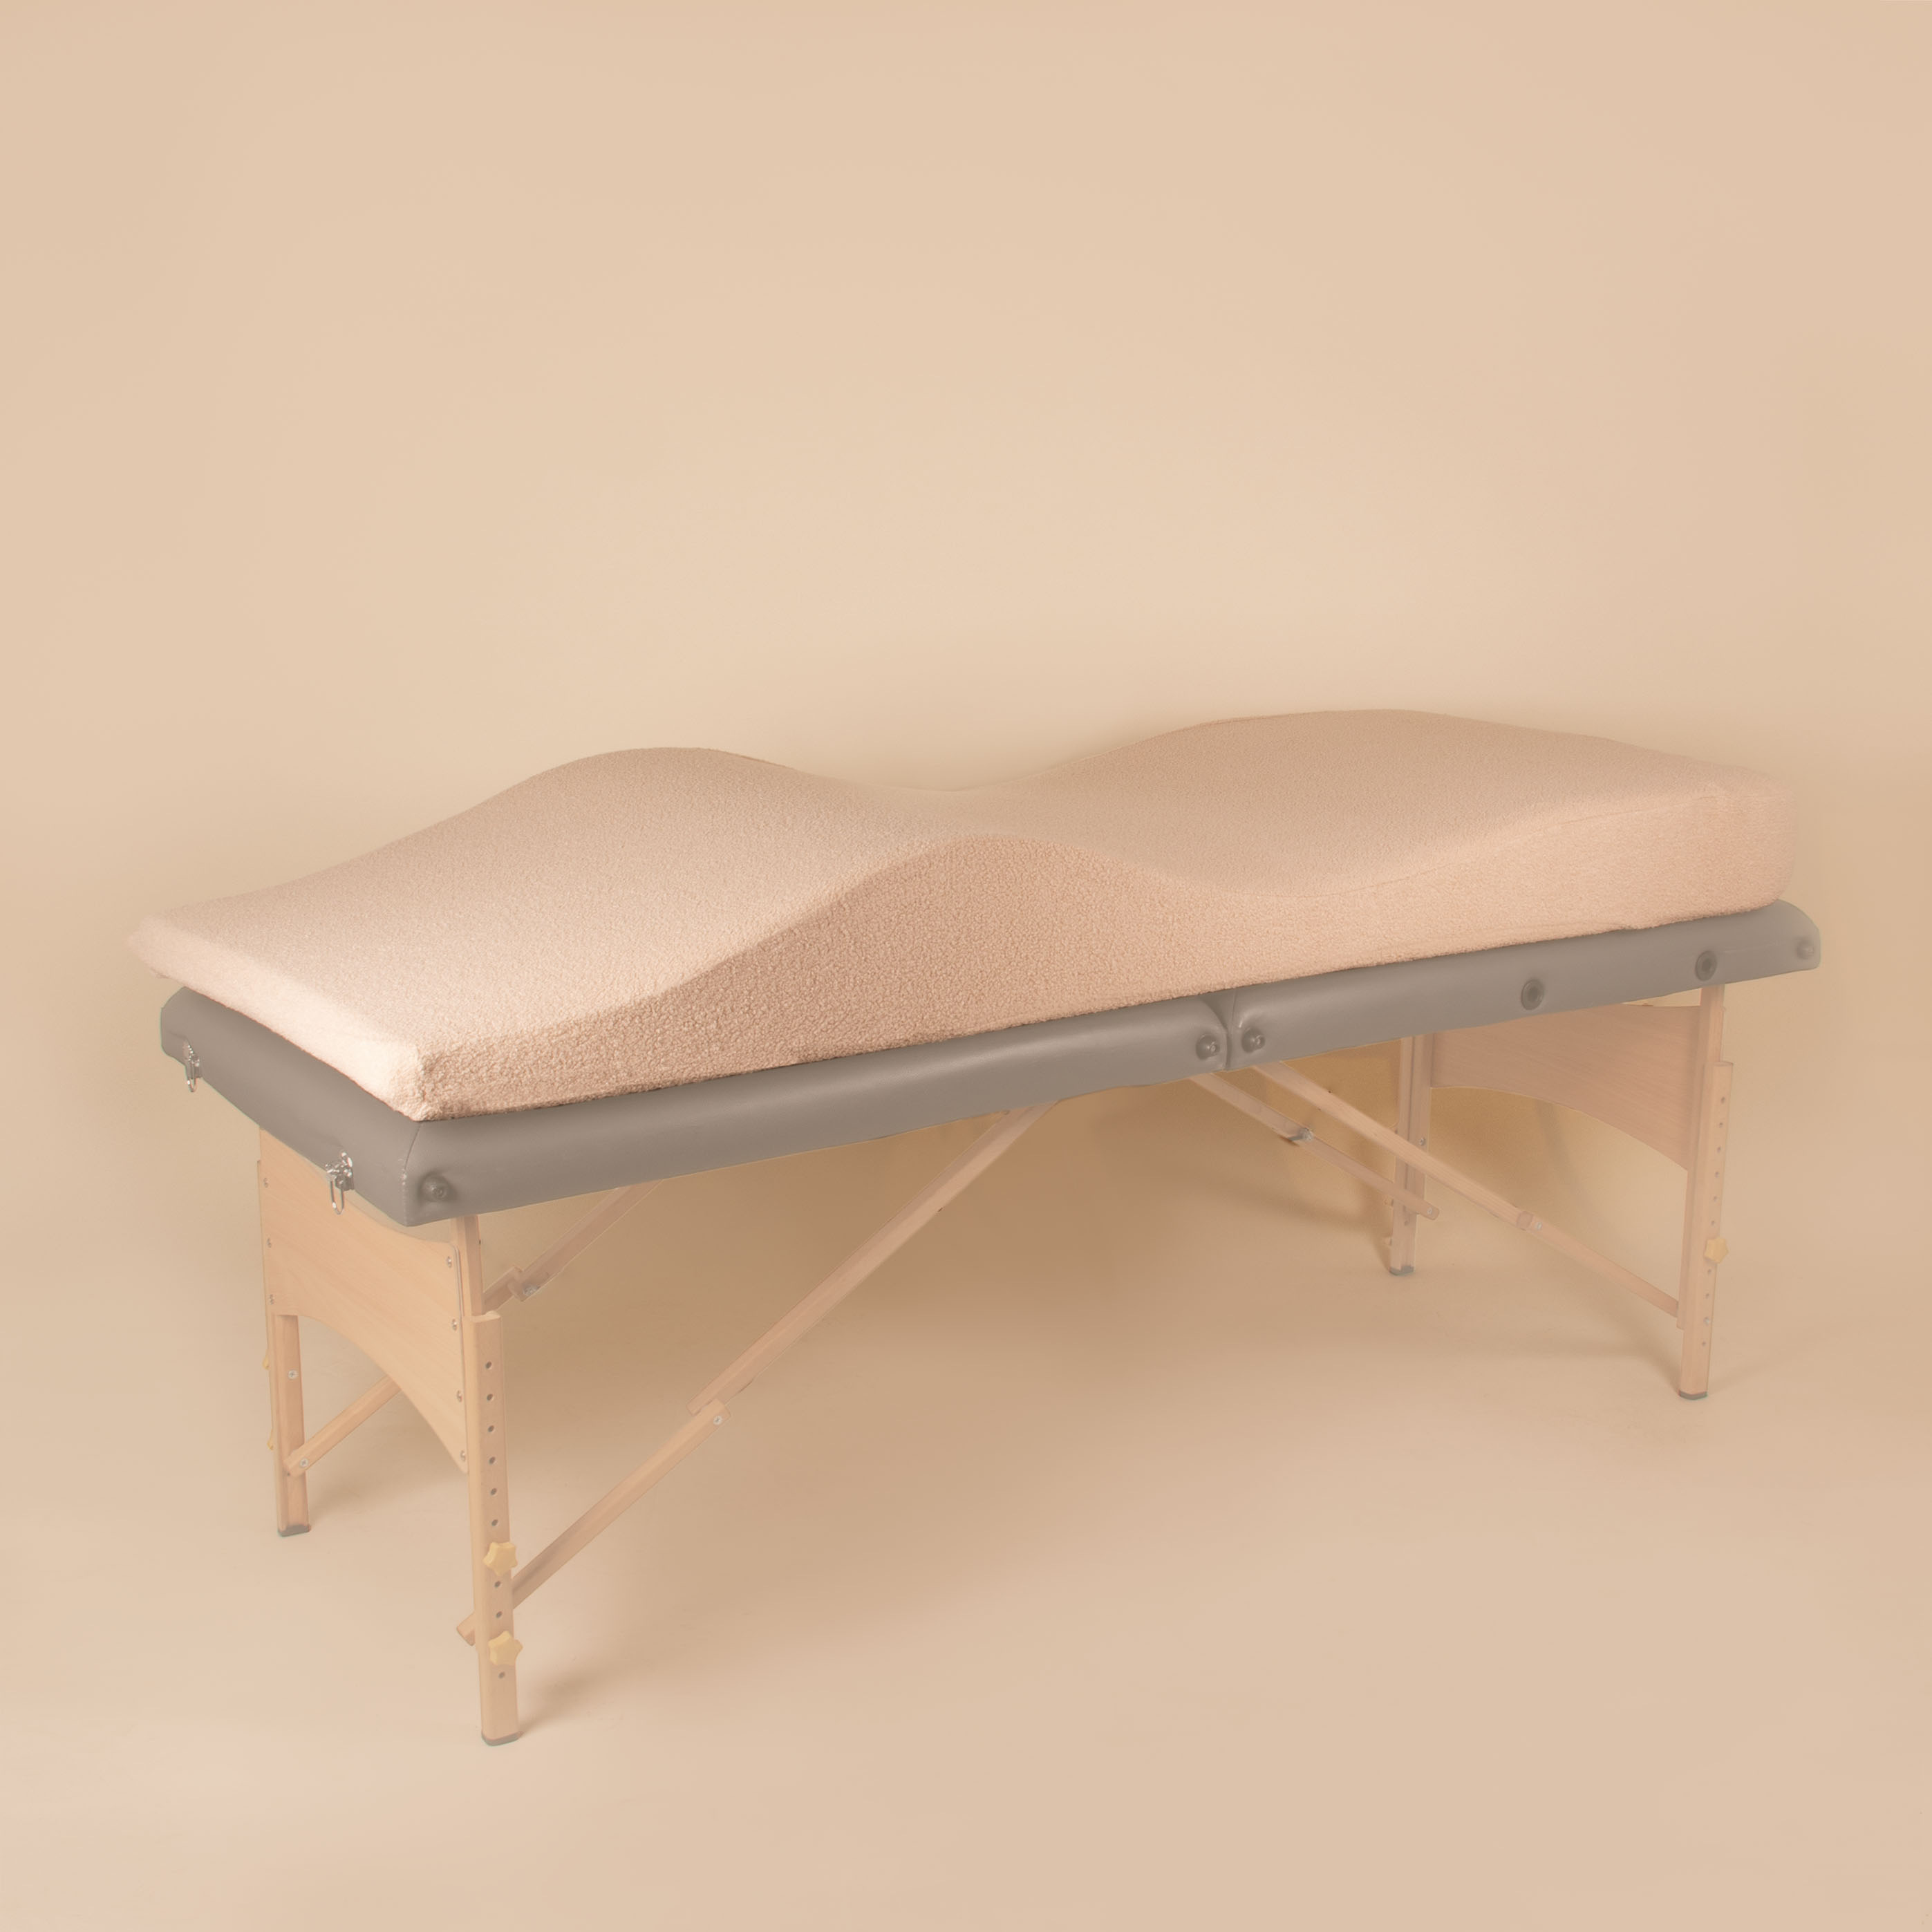 Memory Foam Massage Table Topper